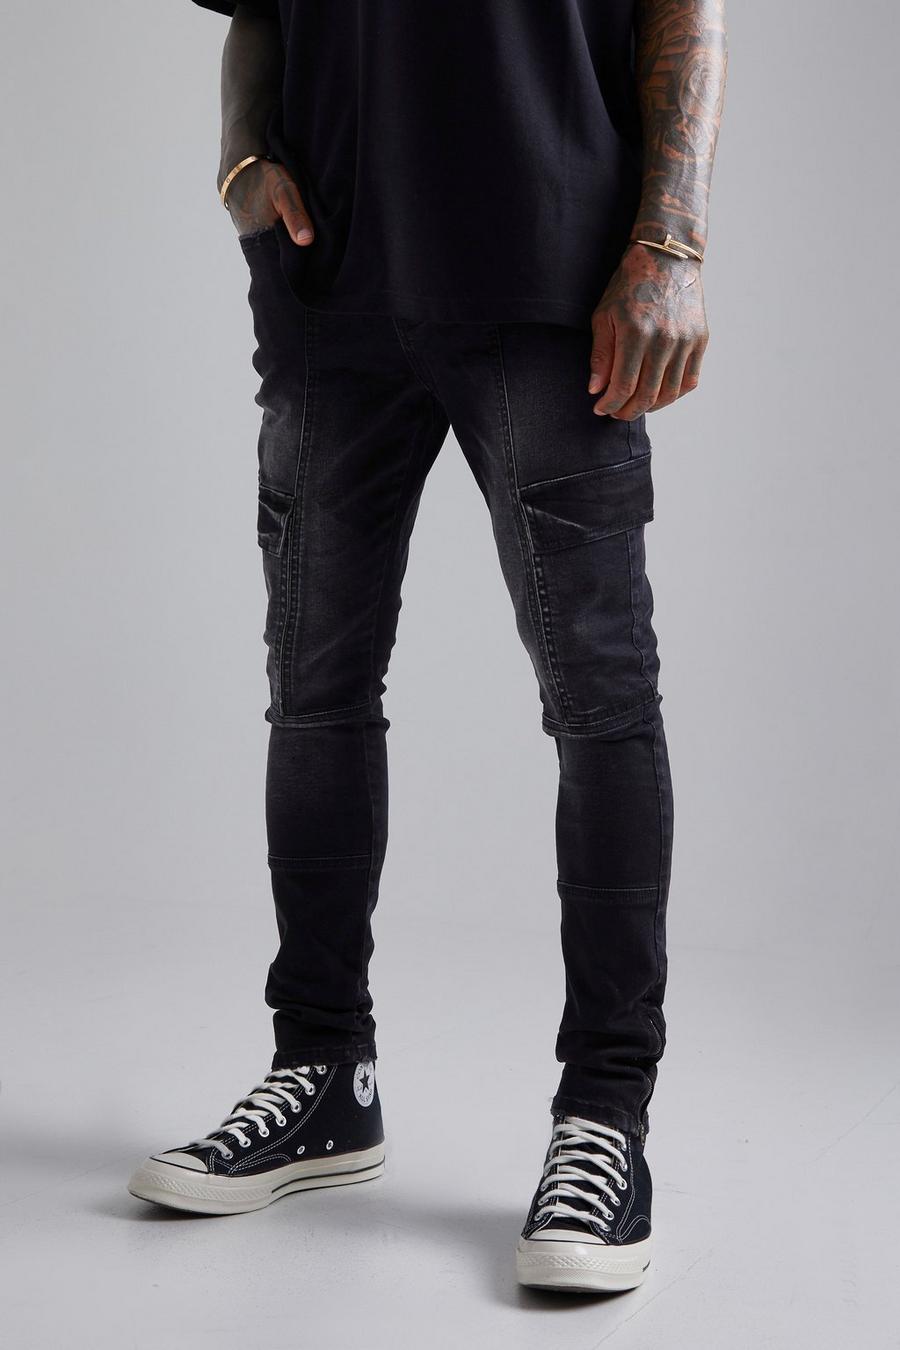 שחור דהוי ג'ינס סופר סקיני בסגנון דגמ'ח עם פאנלים